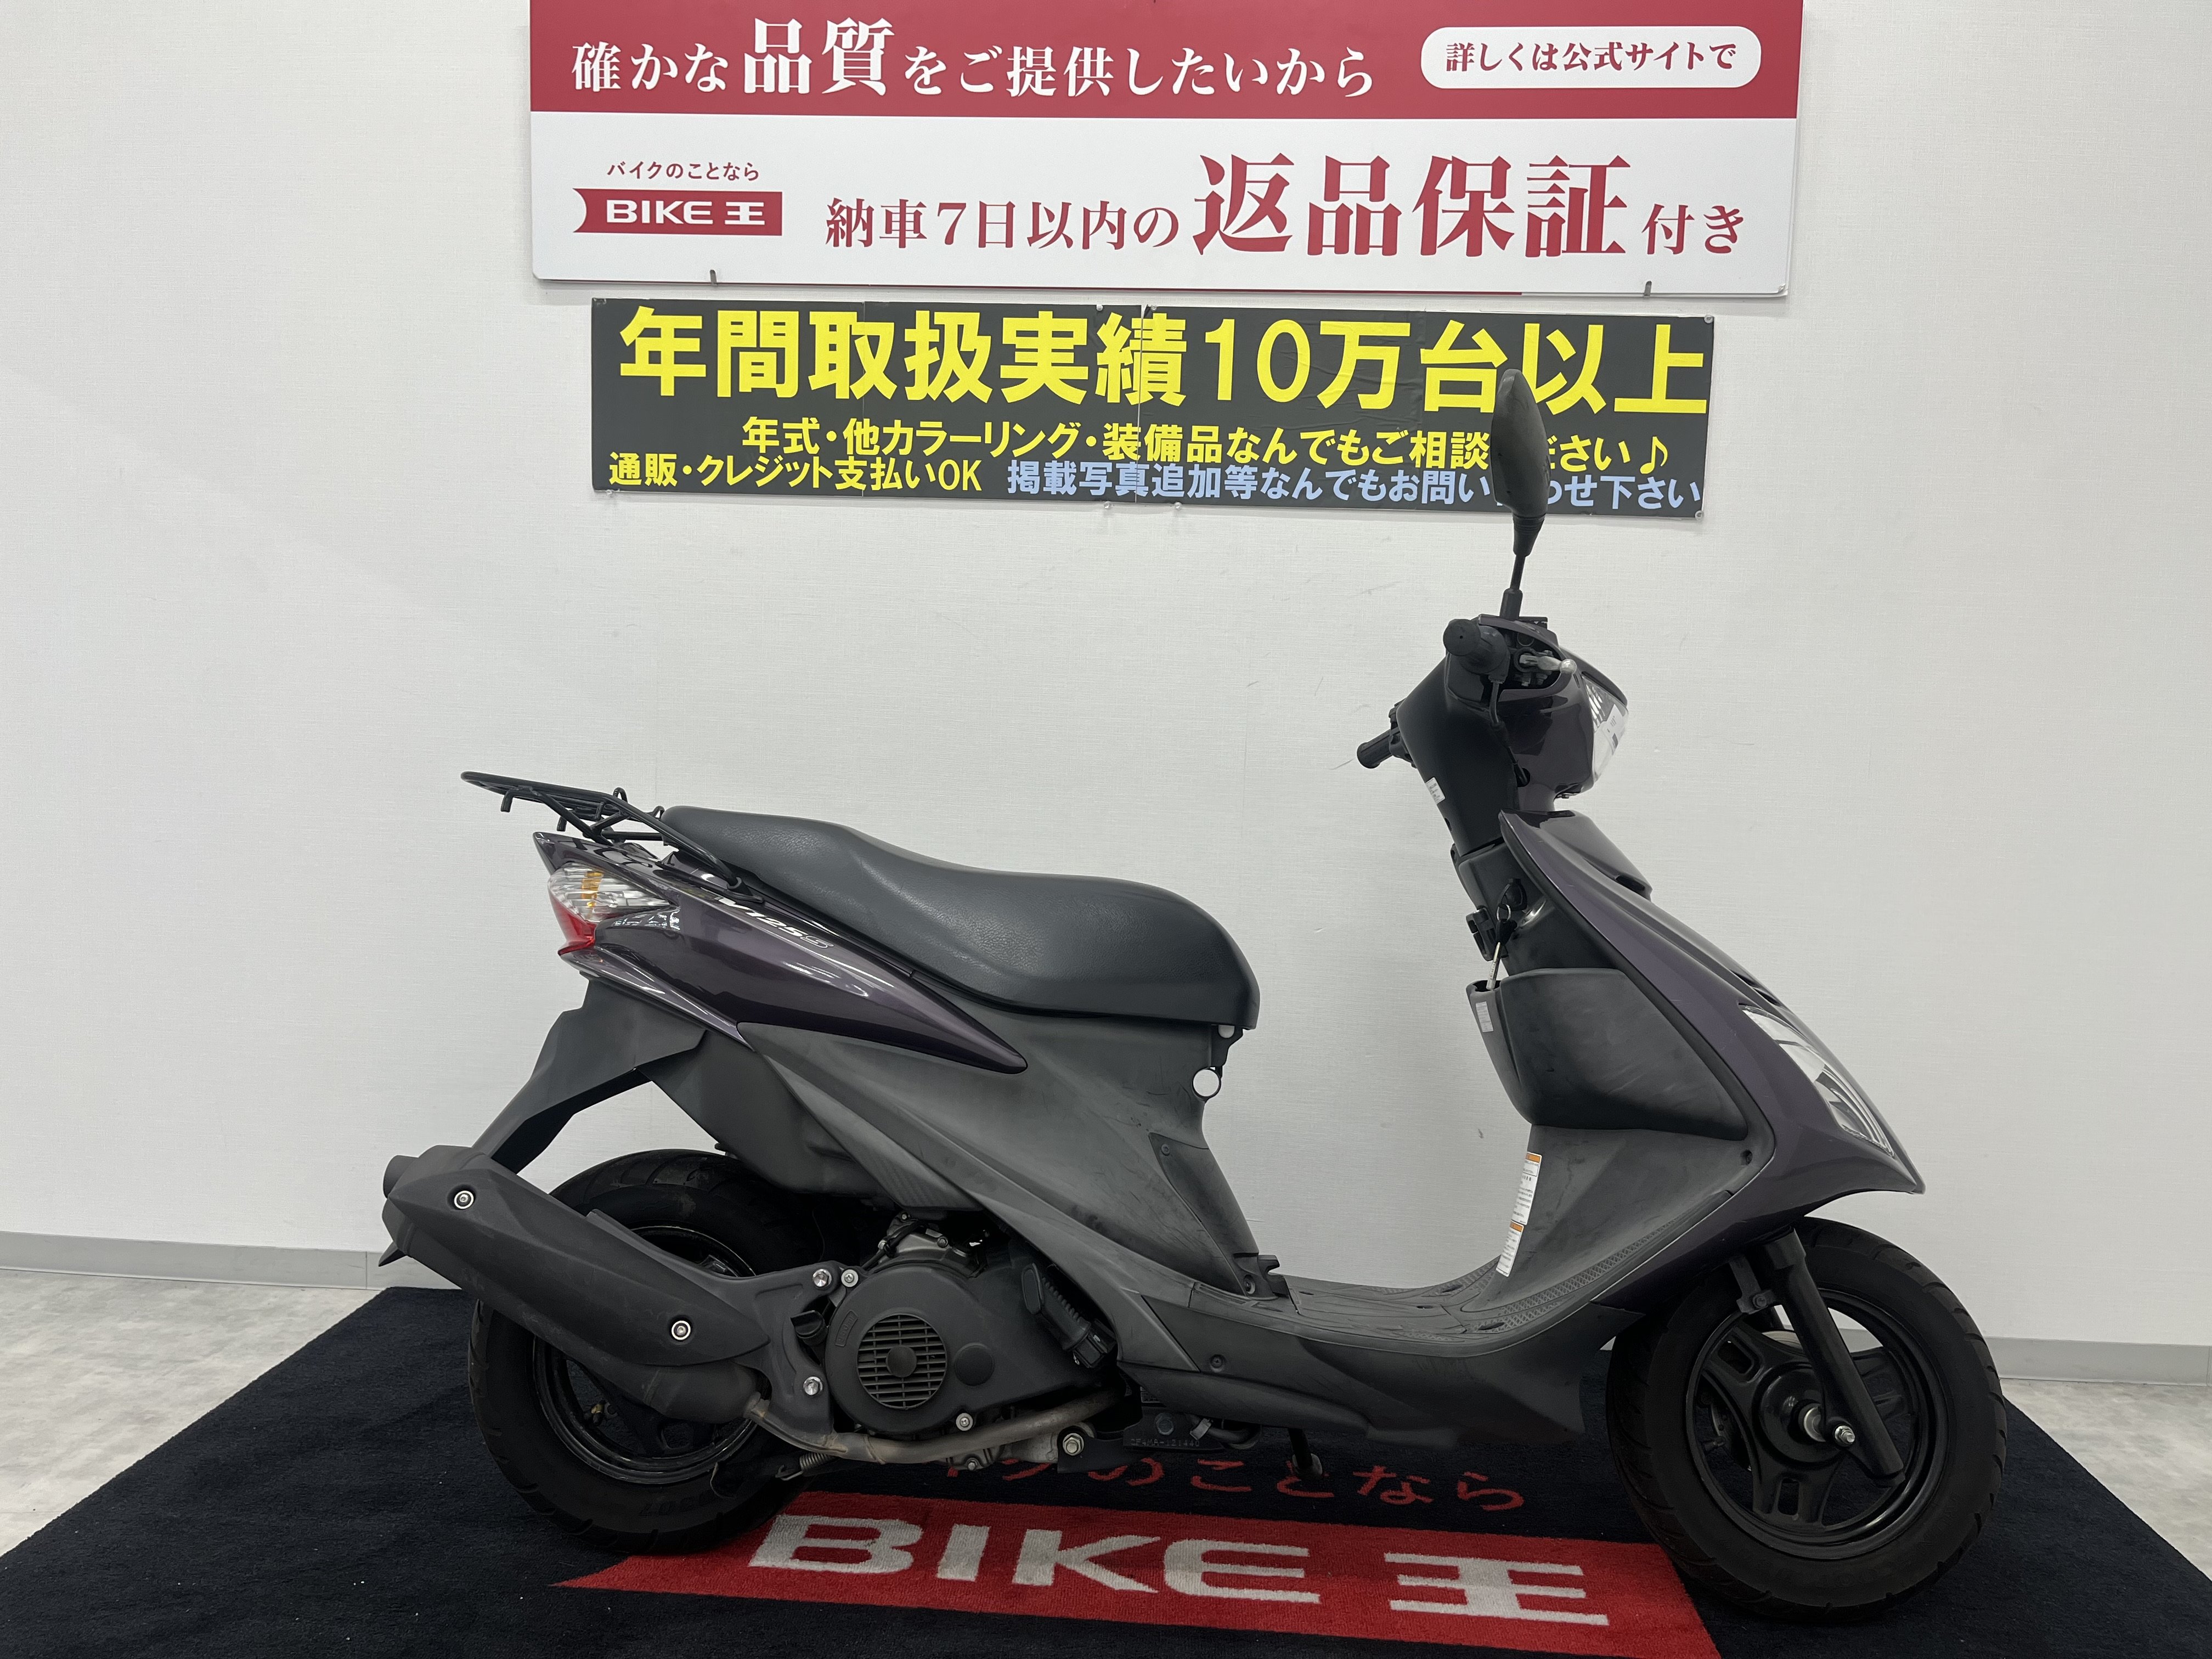 158. スズキ アドレスV125S 小型 バイク 125cc 車体 - 埼玉県のバイク